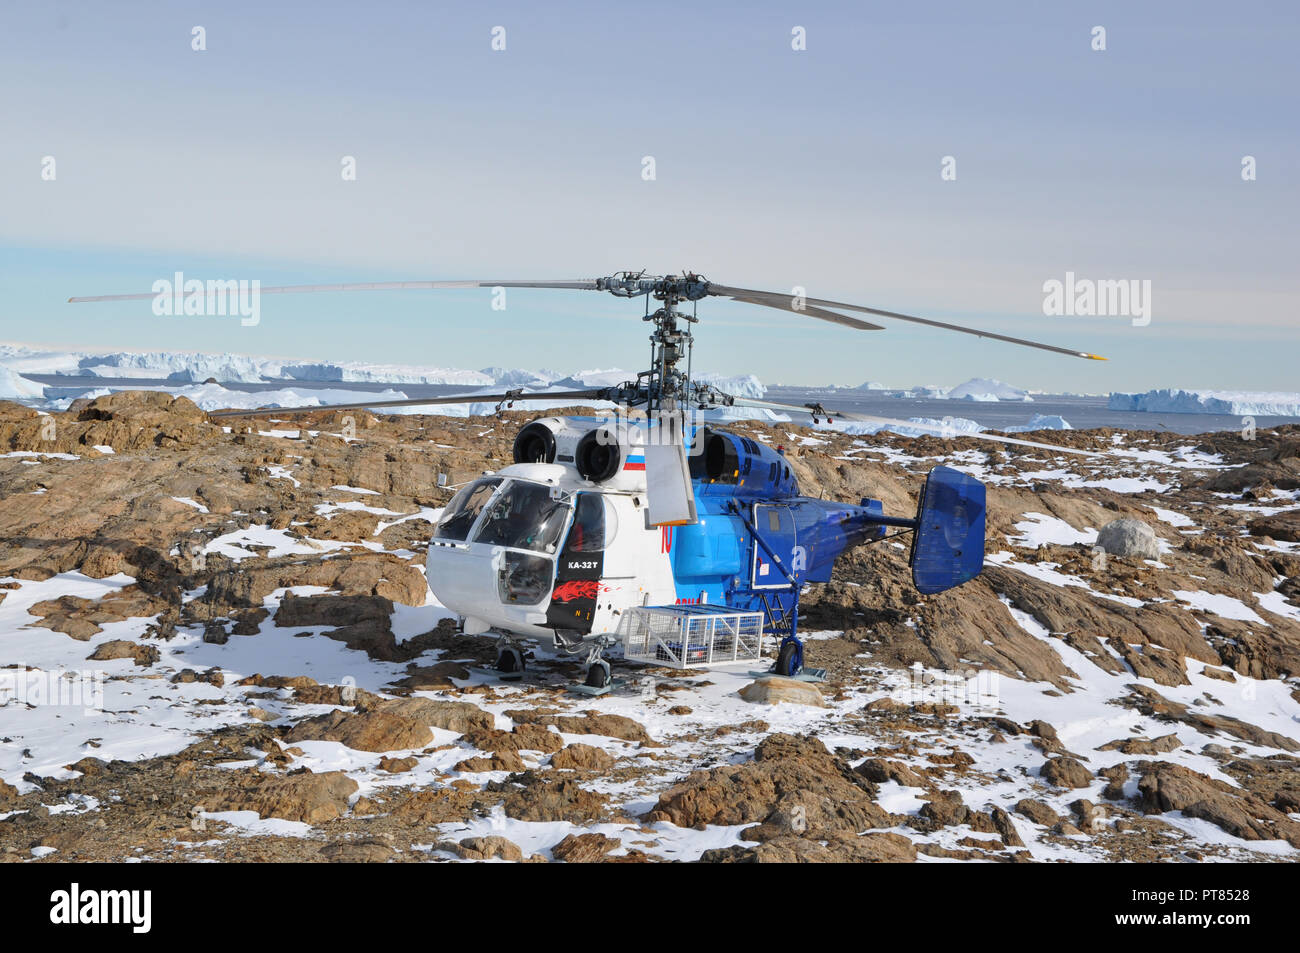 Les progrès réalisés, l'Antarctique le 10 janvier 2017 : K 32 Comité permanent de l'hélicoptère sur le sol rocheux, garée près de la station polaire. 24. L'antarctique Banque D'Images